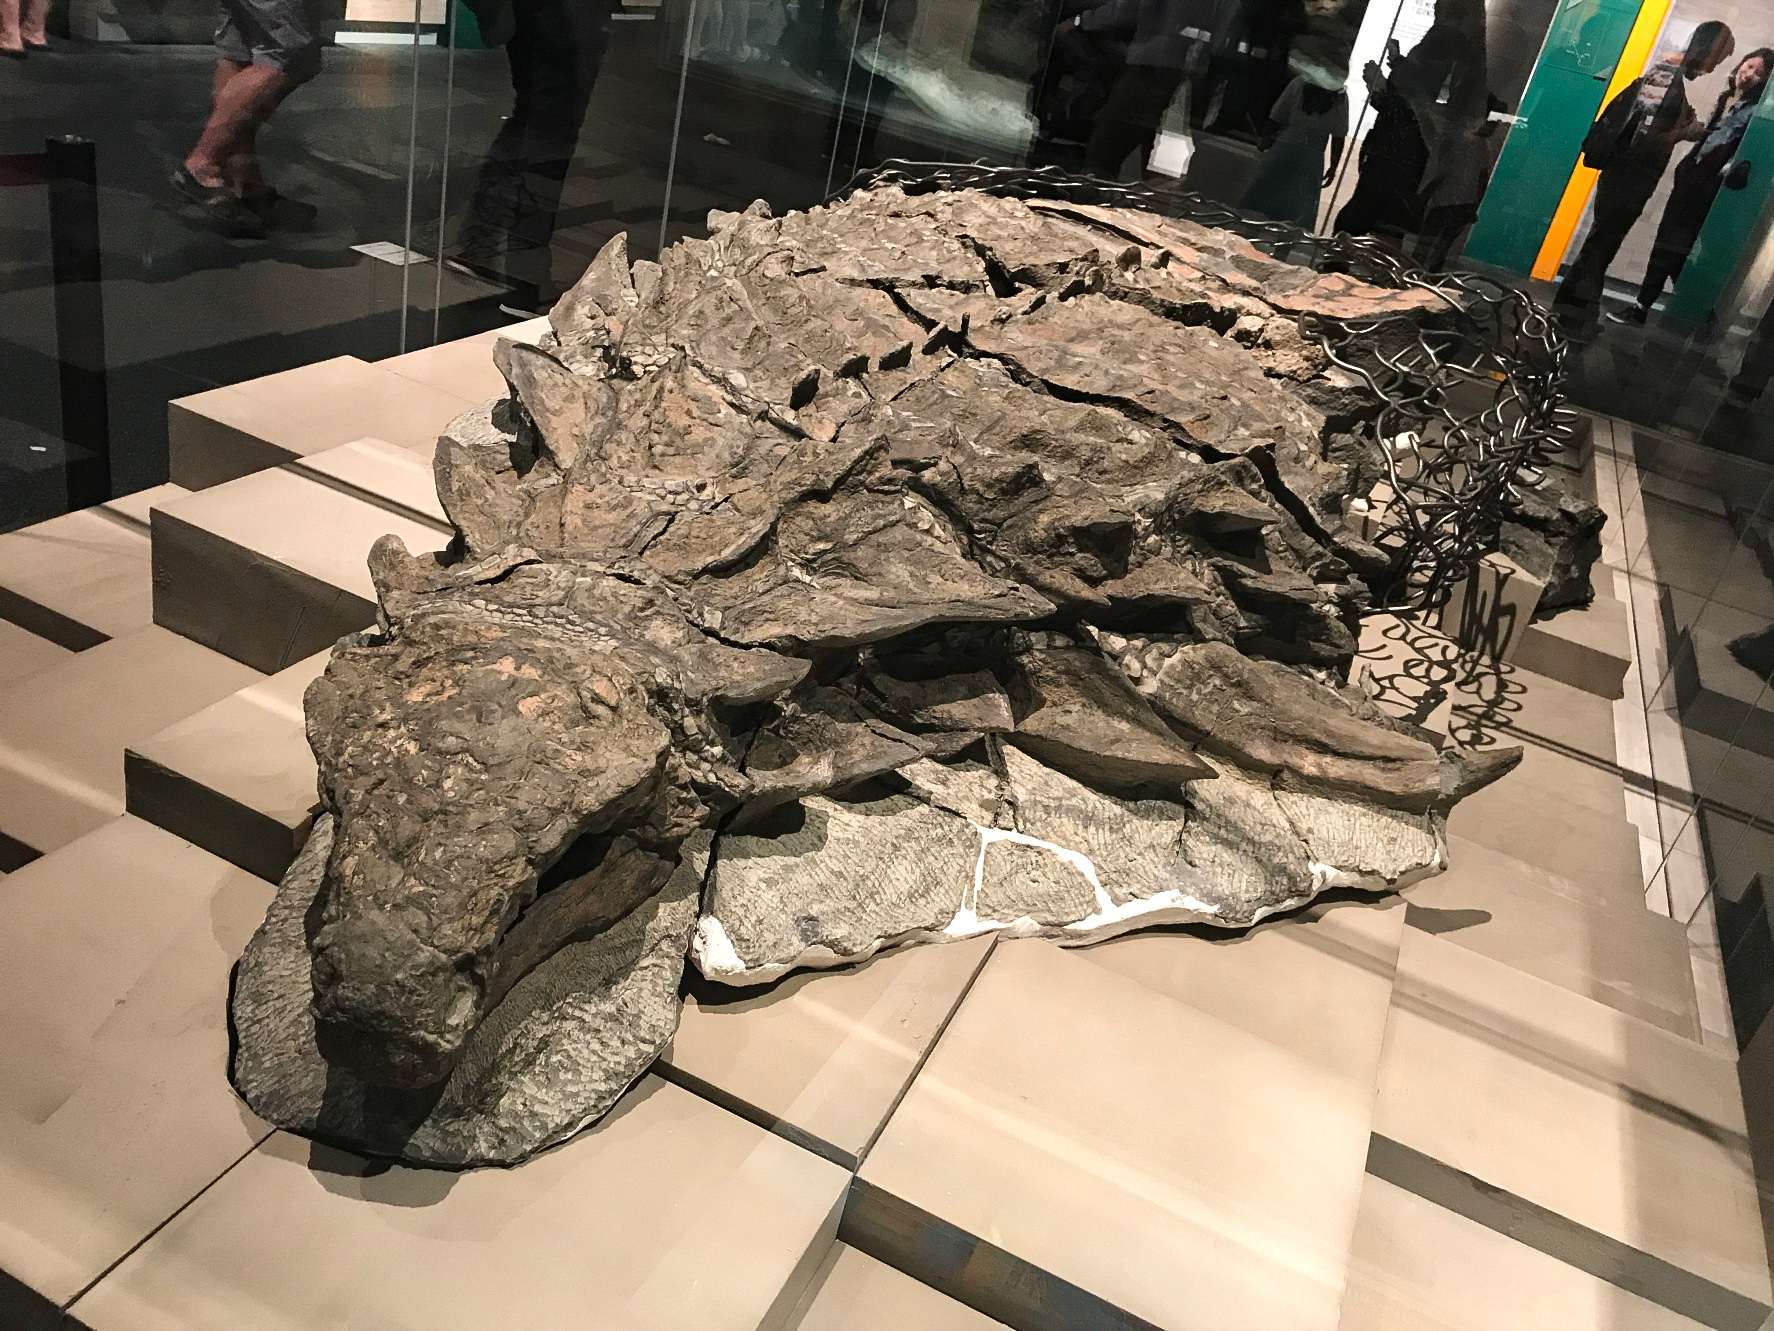 A Borealopelta (jelentése "északi pajzs") a kanadai Alberta korai kréta korából származó nodosaurid ankylosaurus nemzetsége. Egyetlen fajt tartalmaz, a B. markmitchellit, amelyet 2017-ben Caleb Brown és munkatársai a Suncor nodosaur néven ismert, jól megőrzött példányról neveztek el.